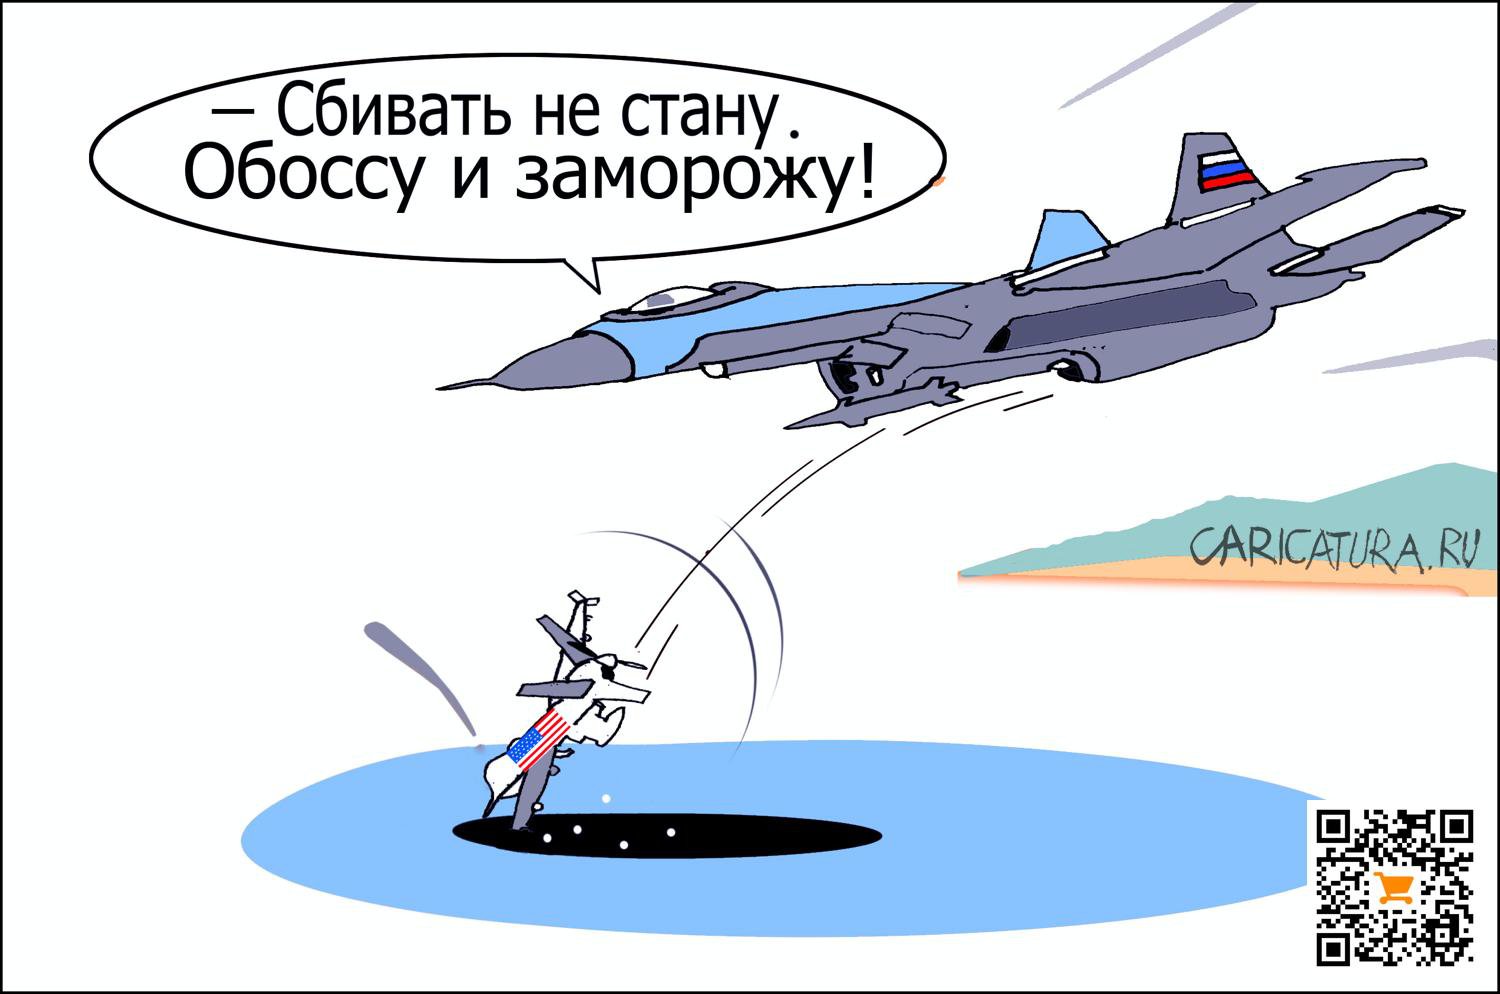 Карикатура "Нарушитель", Александр Уваров